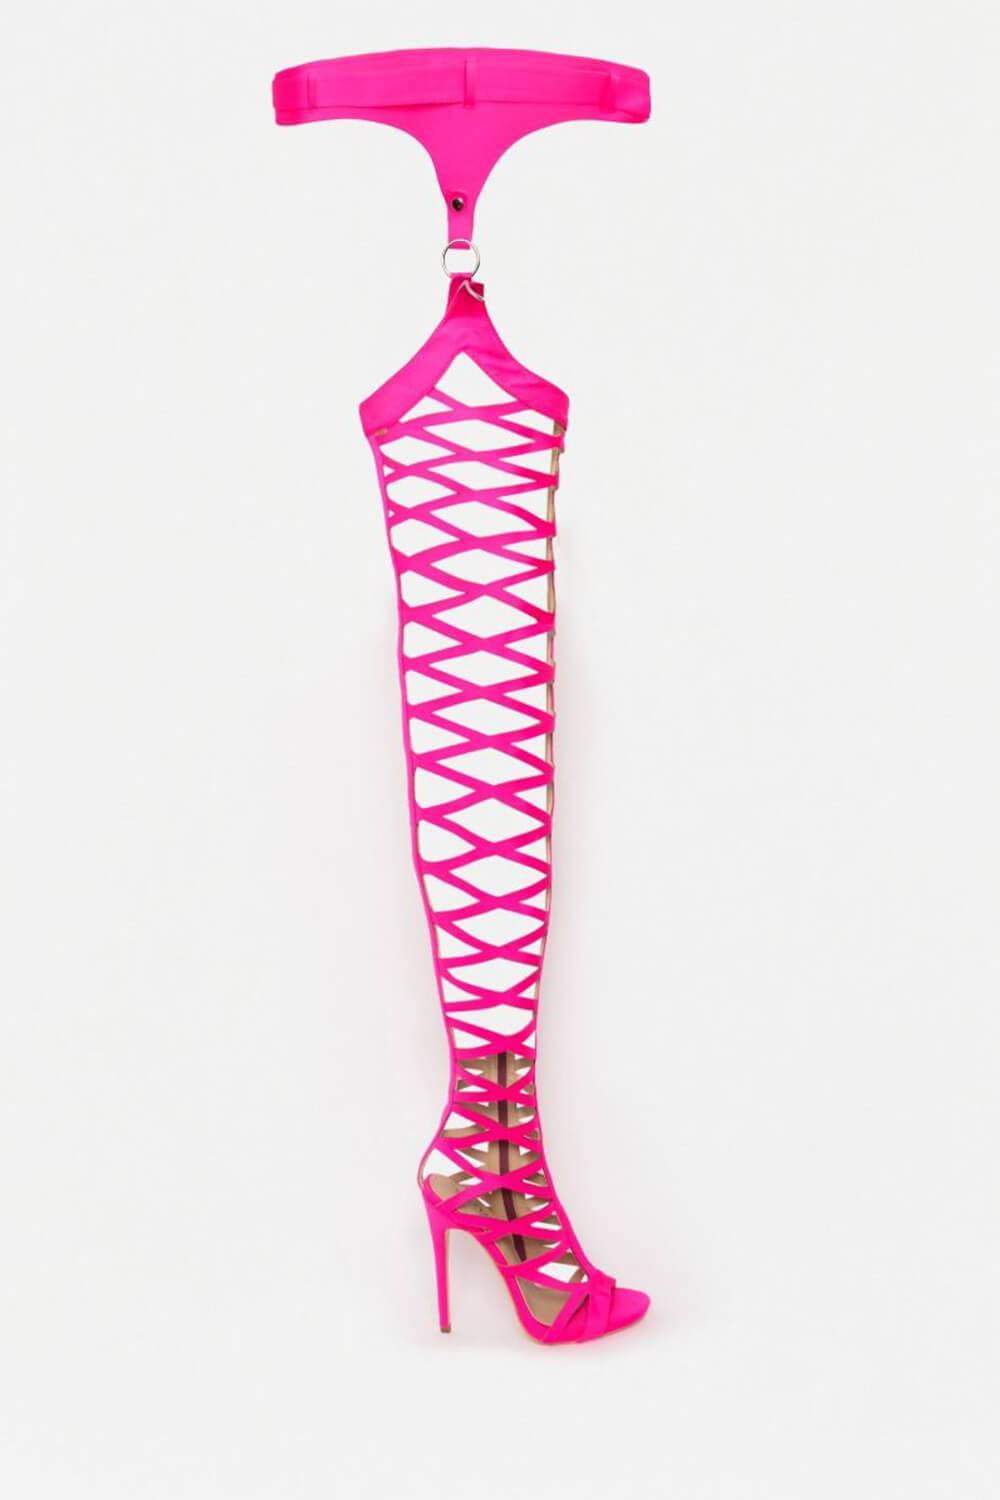 deep pink heels